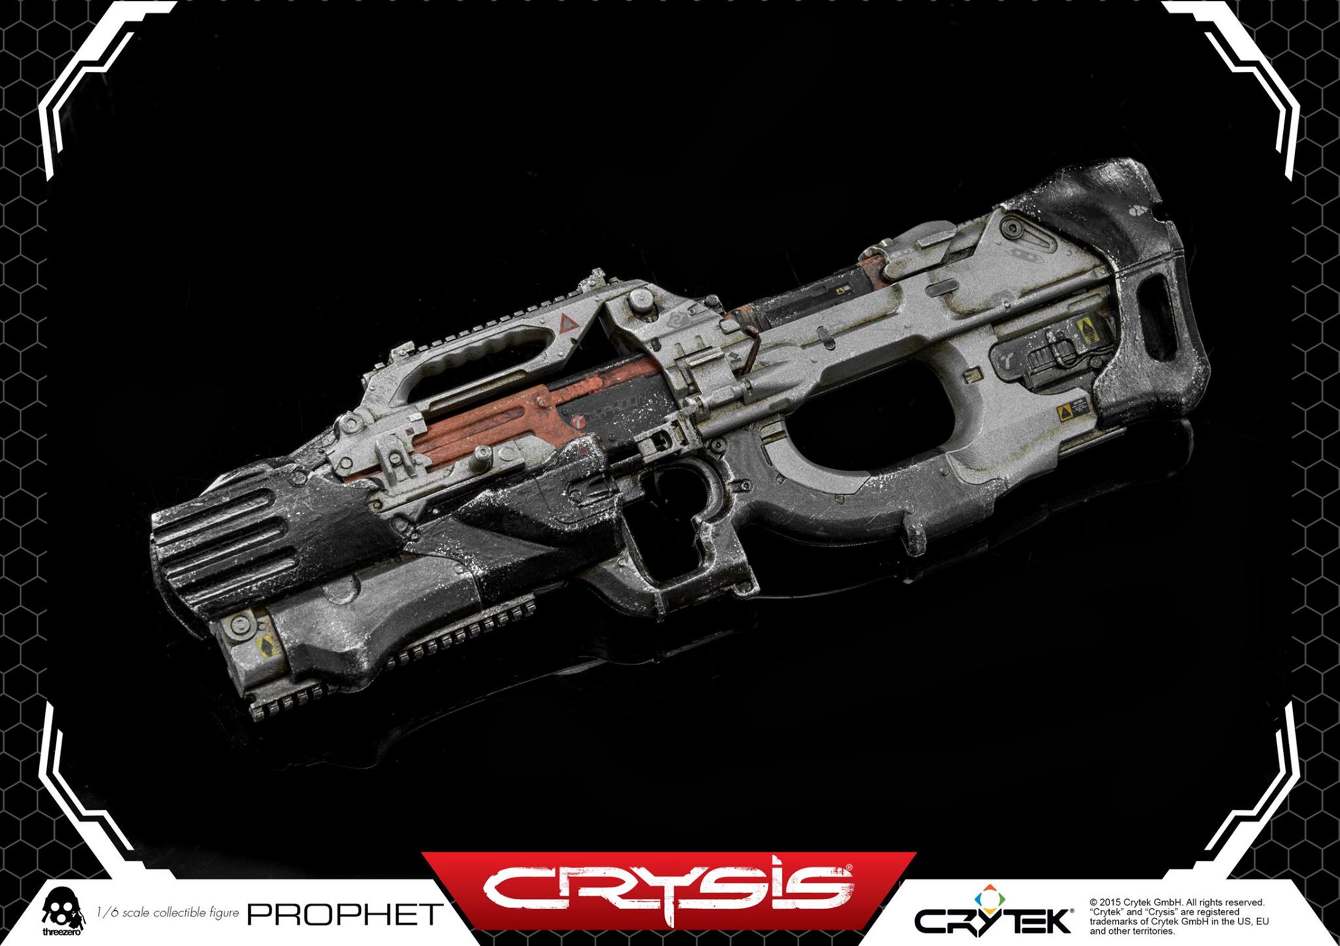 ThreeZero-Crysis-video-game-Prophet-CRY113_1340_c.jpg